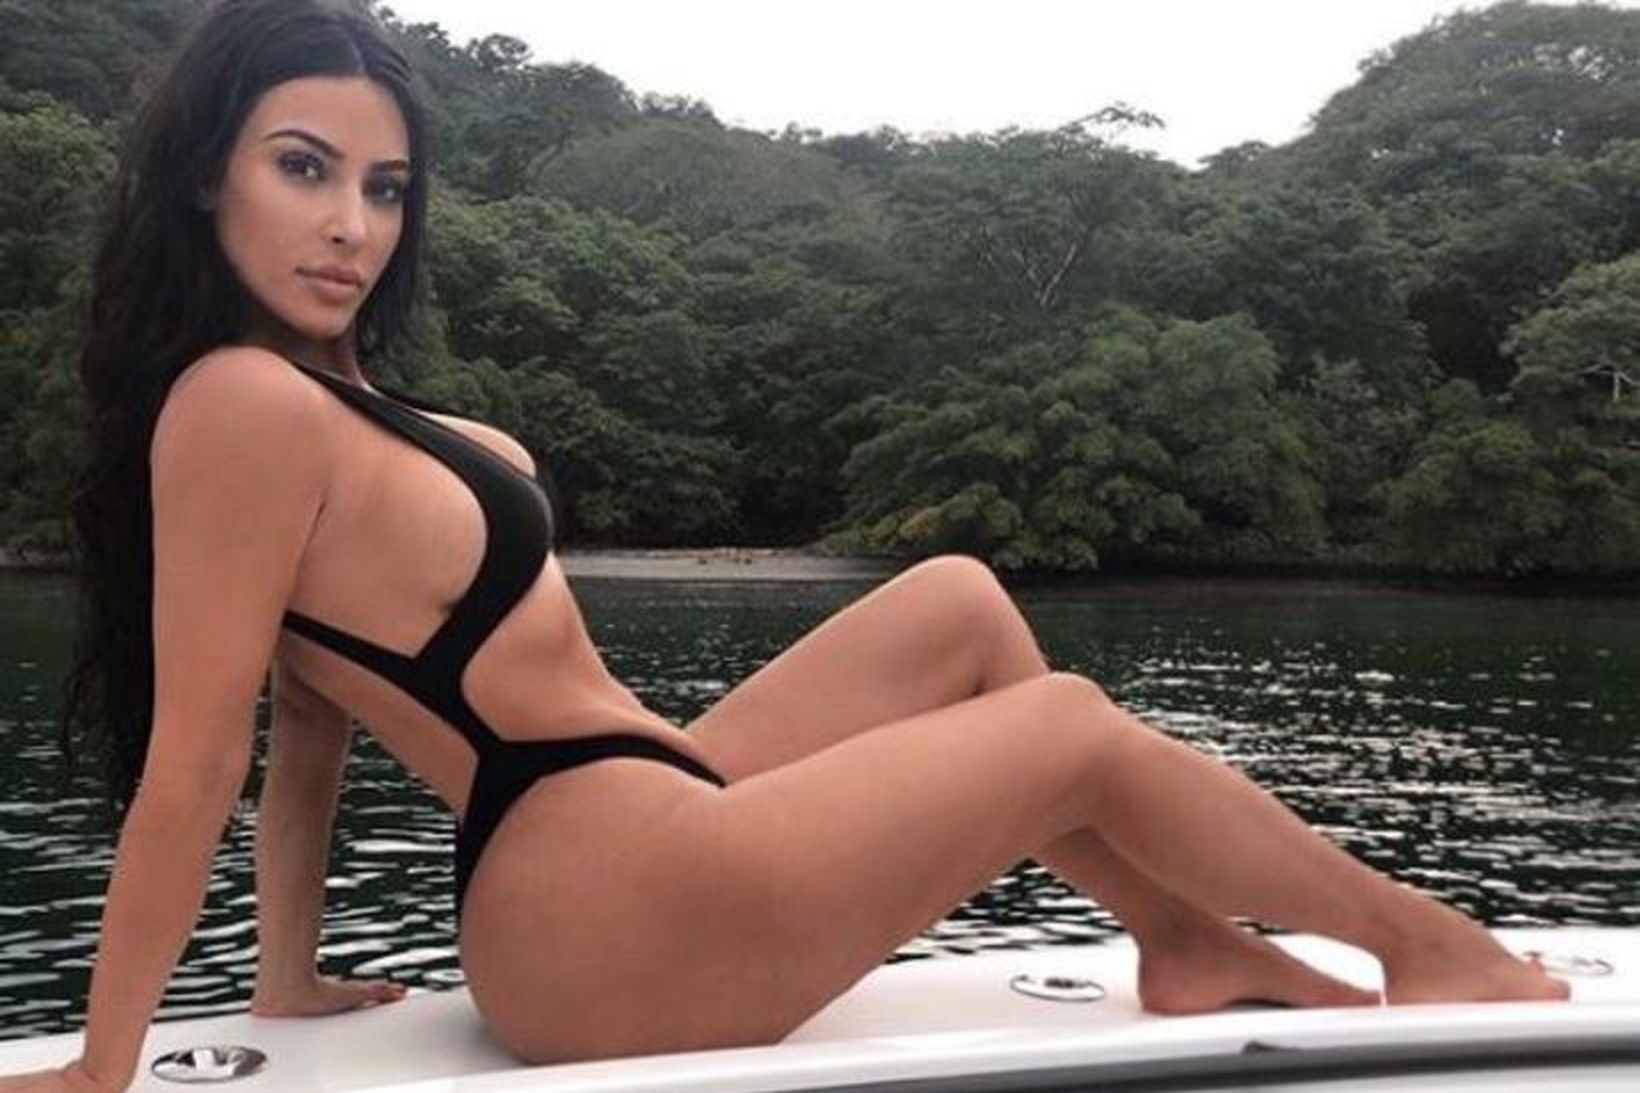 Kim Kardashian birti þessa mynd af sér á Instagram. Afturendi …